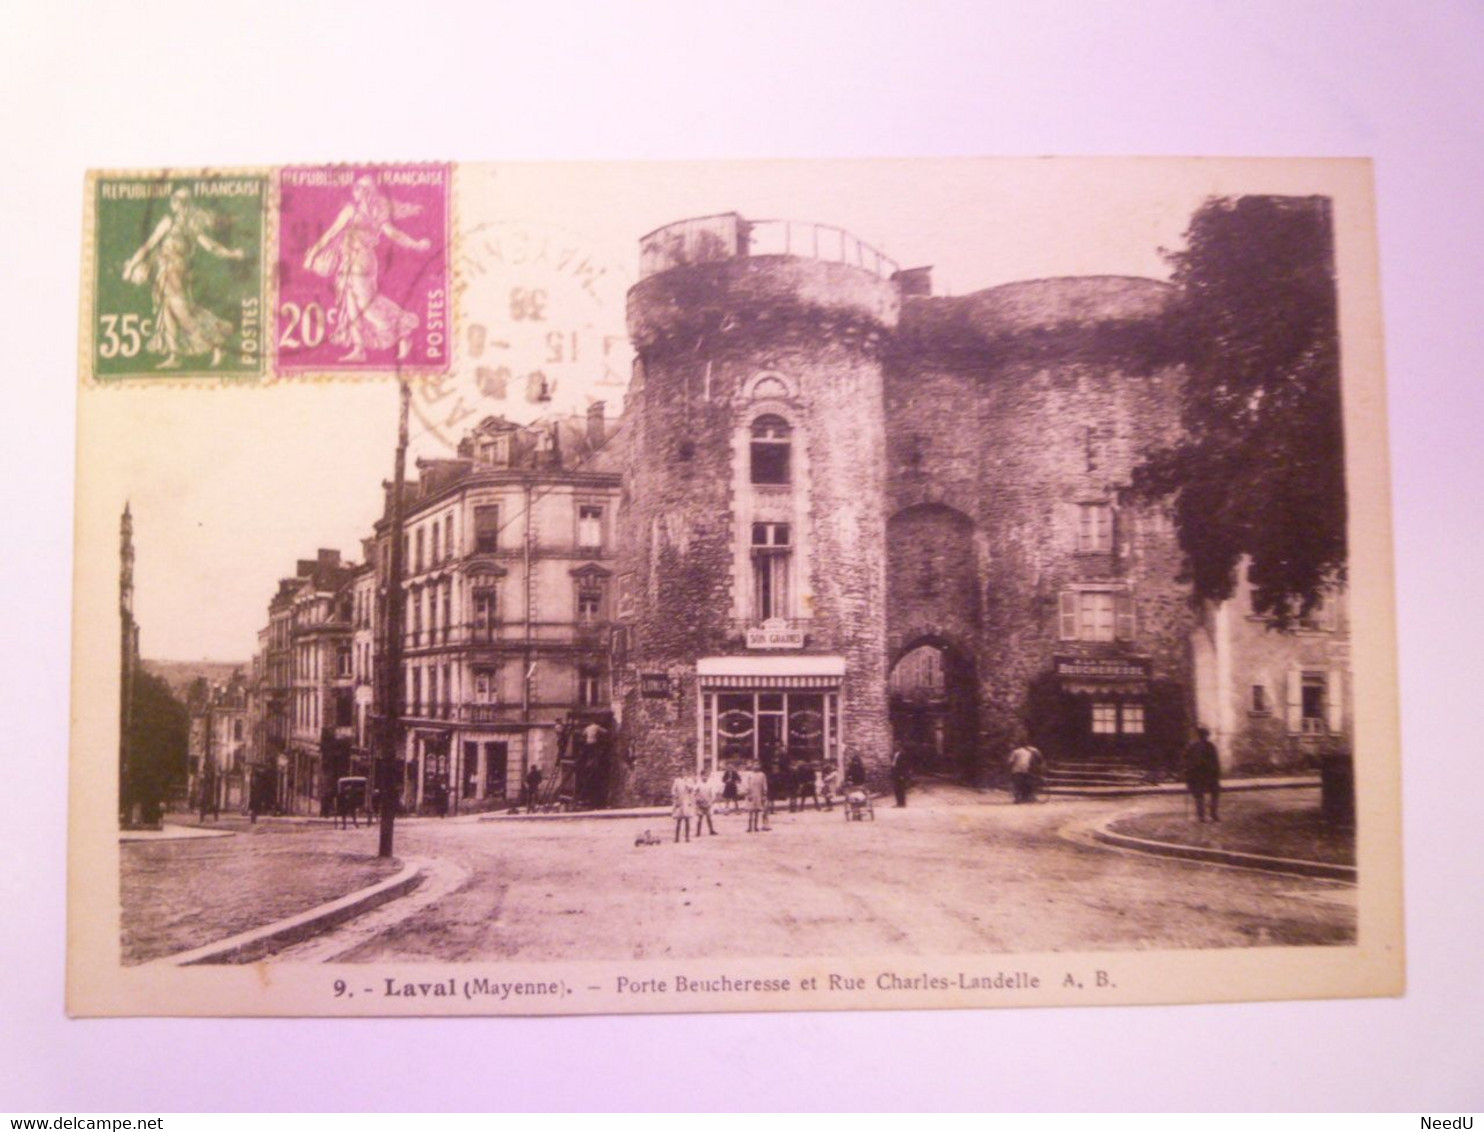 GP 2021 - 203  LAVAL  (Mayenne)  :  Porte Beucheresse Et Rue Charles-Landelle  1938    XXX - Laval